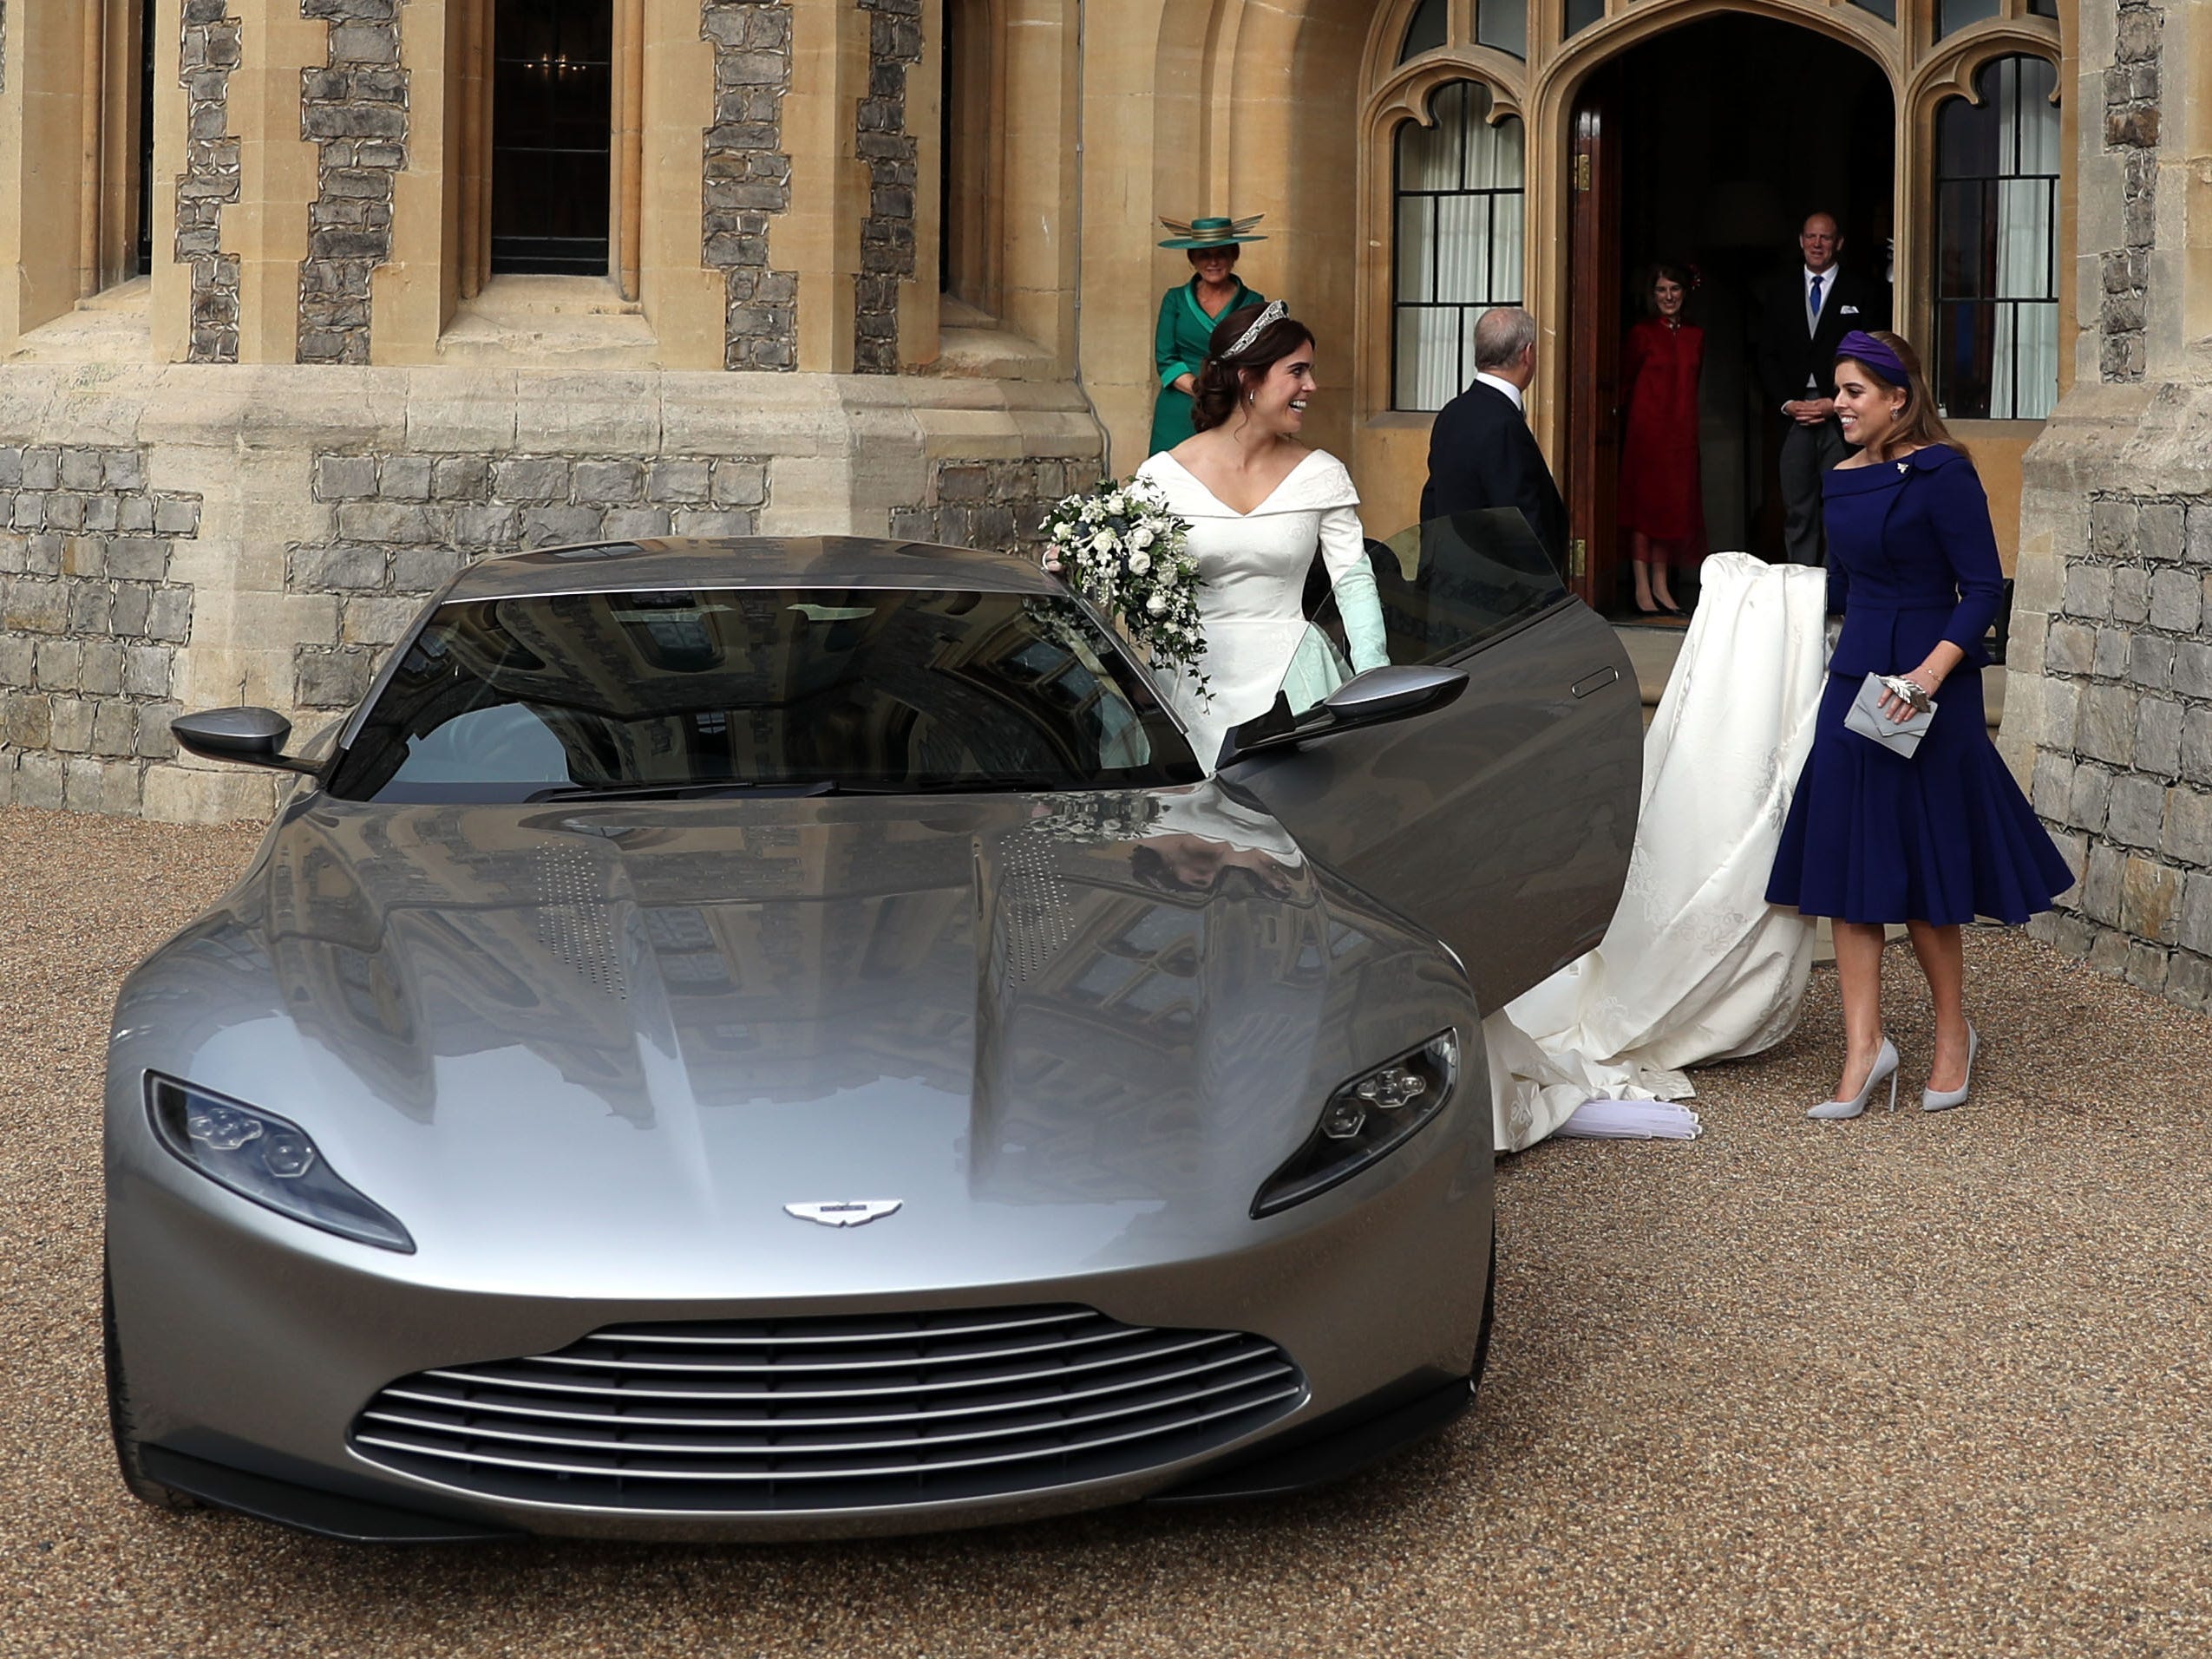 Prinzessin Beatrice hält das Hochzeitskleid von Prinzessin Eugenie, als sie an ihrem Hochzeitstag im Jahr 2018 in ein Auto steigt.